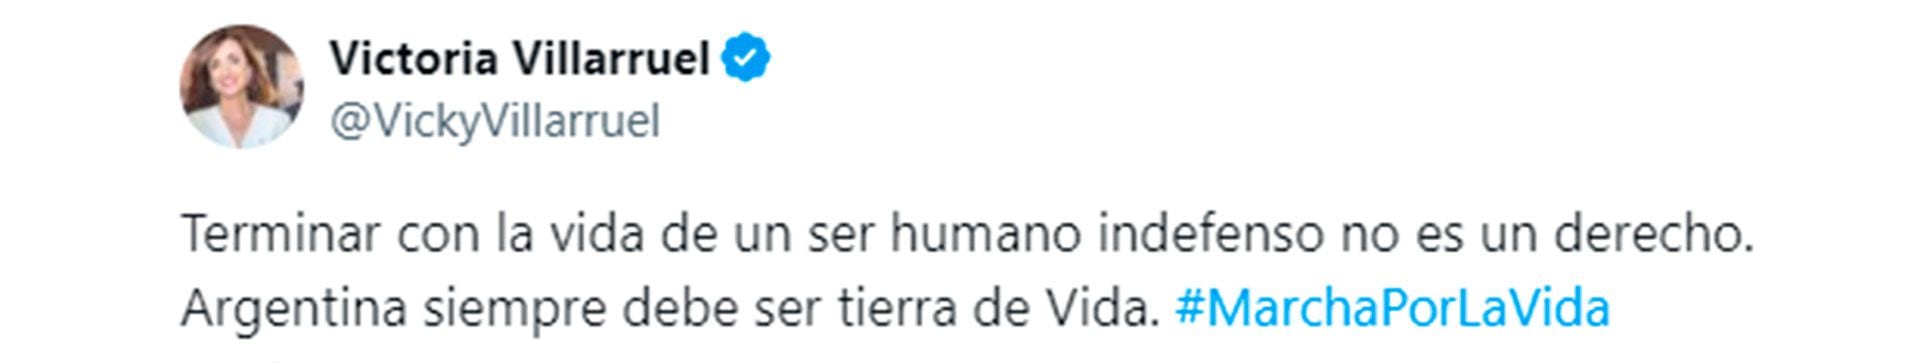 El tuit de la Vicepresidenta Victoria Villarruel el 23 de marzo en X